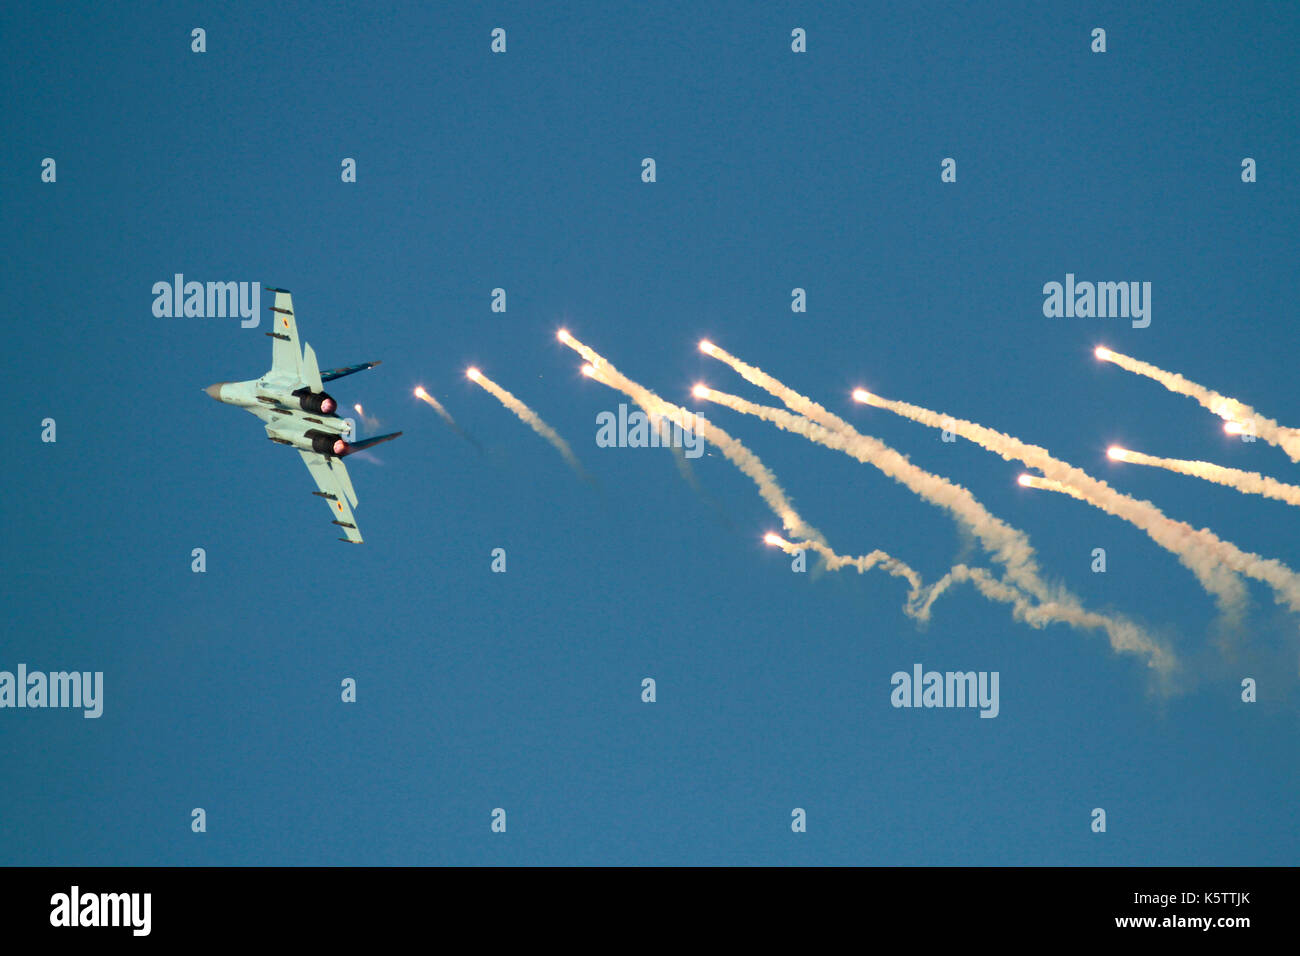 L'aviation militaire. Sukhoi Su-27 FLANKER avions de chasse de l'Armée de l'air des fusées éclairantes de libération de l'Ukraine Banque D'Images